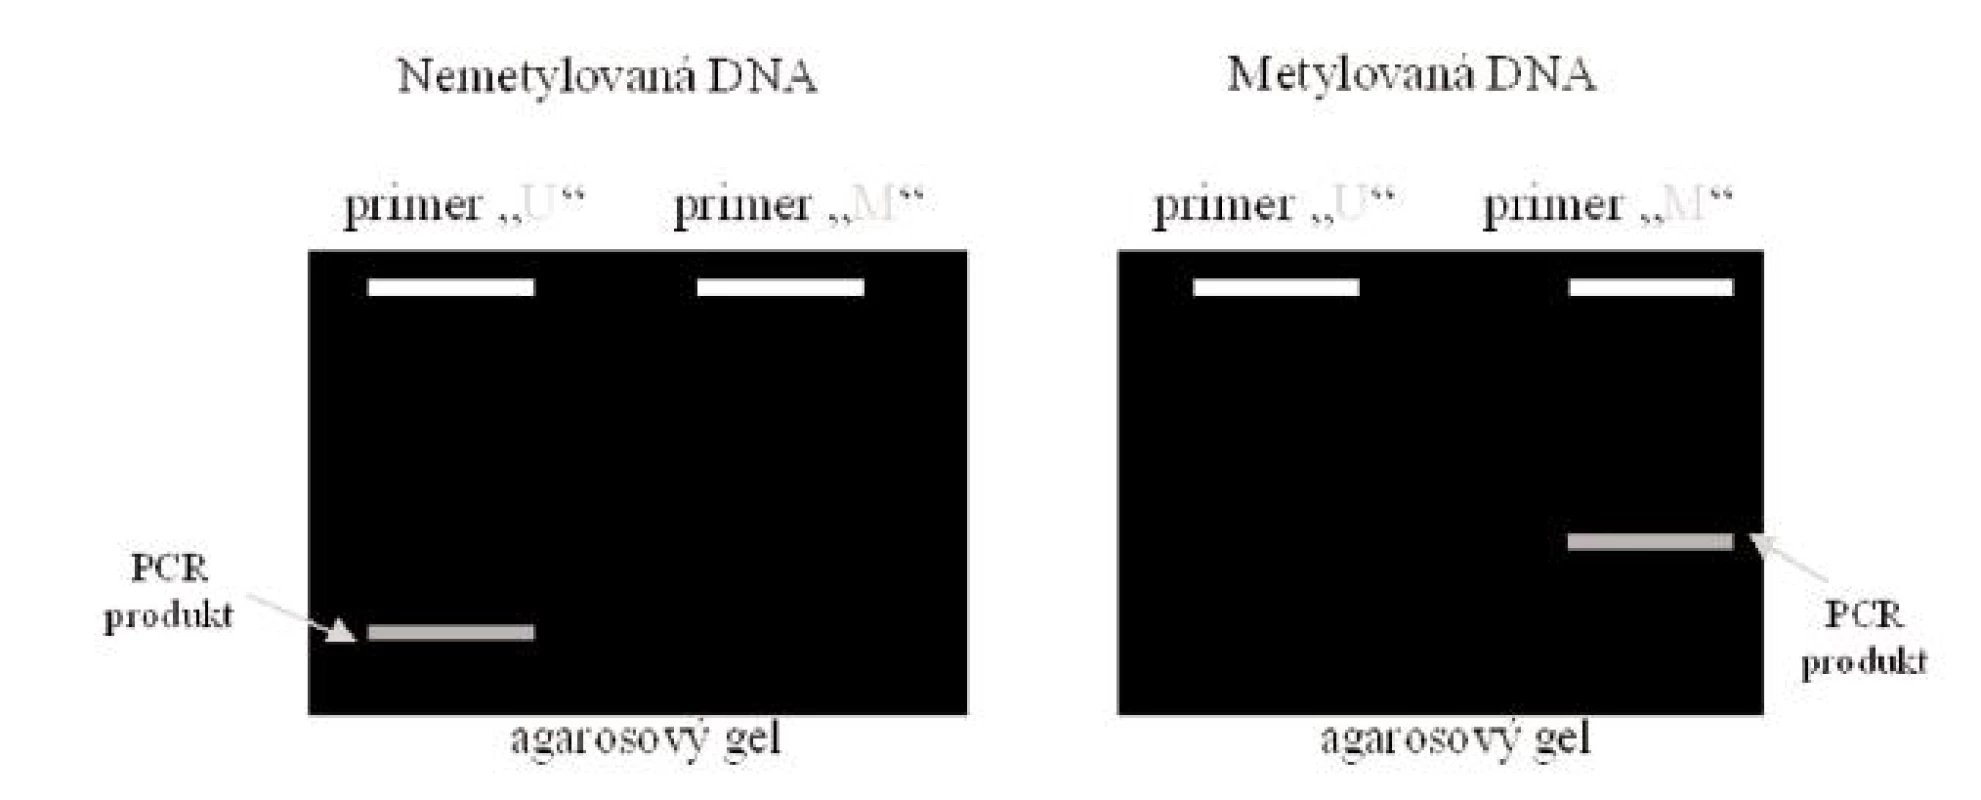 Elektroforetické vyhodnocení MSP
Legenda: Je-li DNA nemetylovaná, vzniká PCR produkt po reakci se setem primerů U, který je specifický pro nemetylovanou DNA. Je-li DNA metylovaná, vzniká PCR produkt po reakci se setem primerů M, který je specifický pro metylovanou DNA.